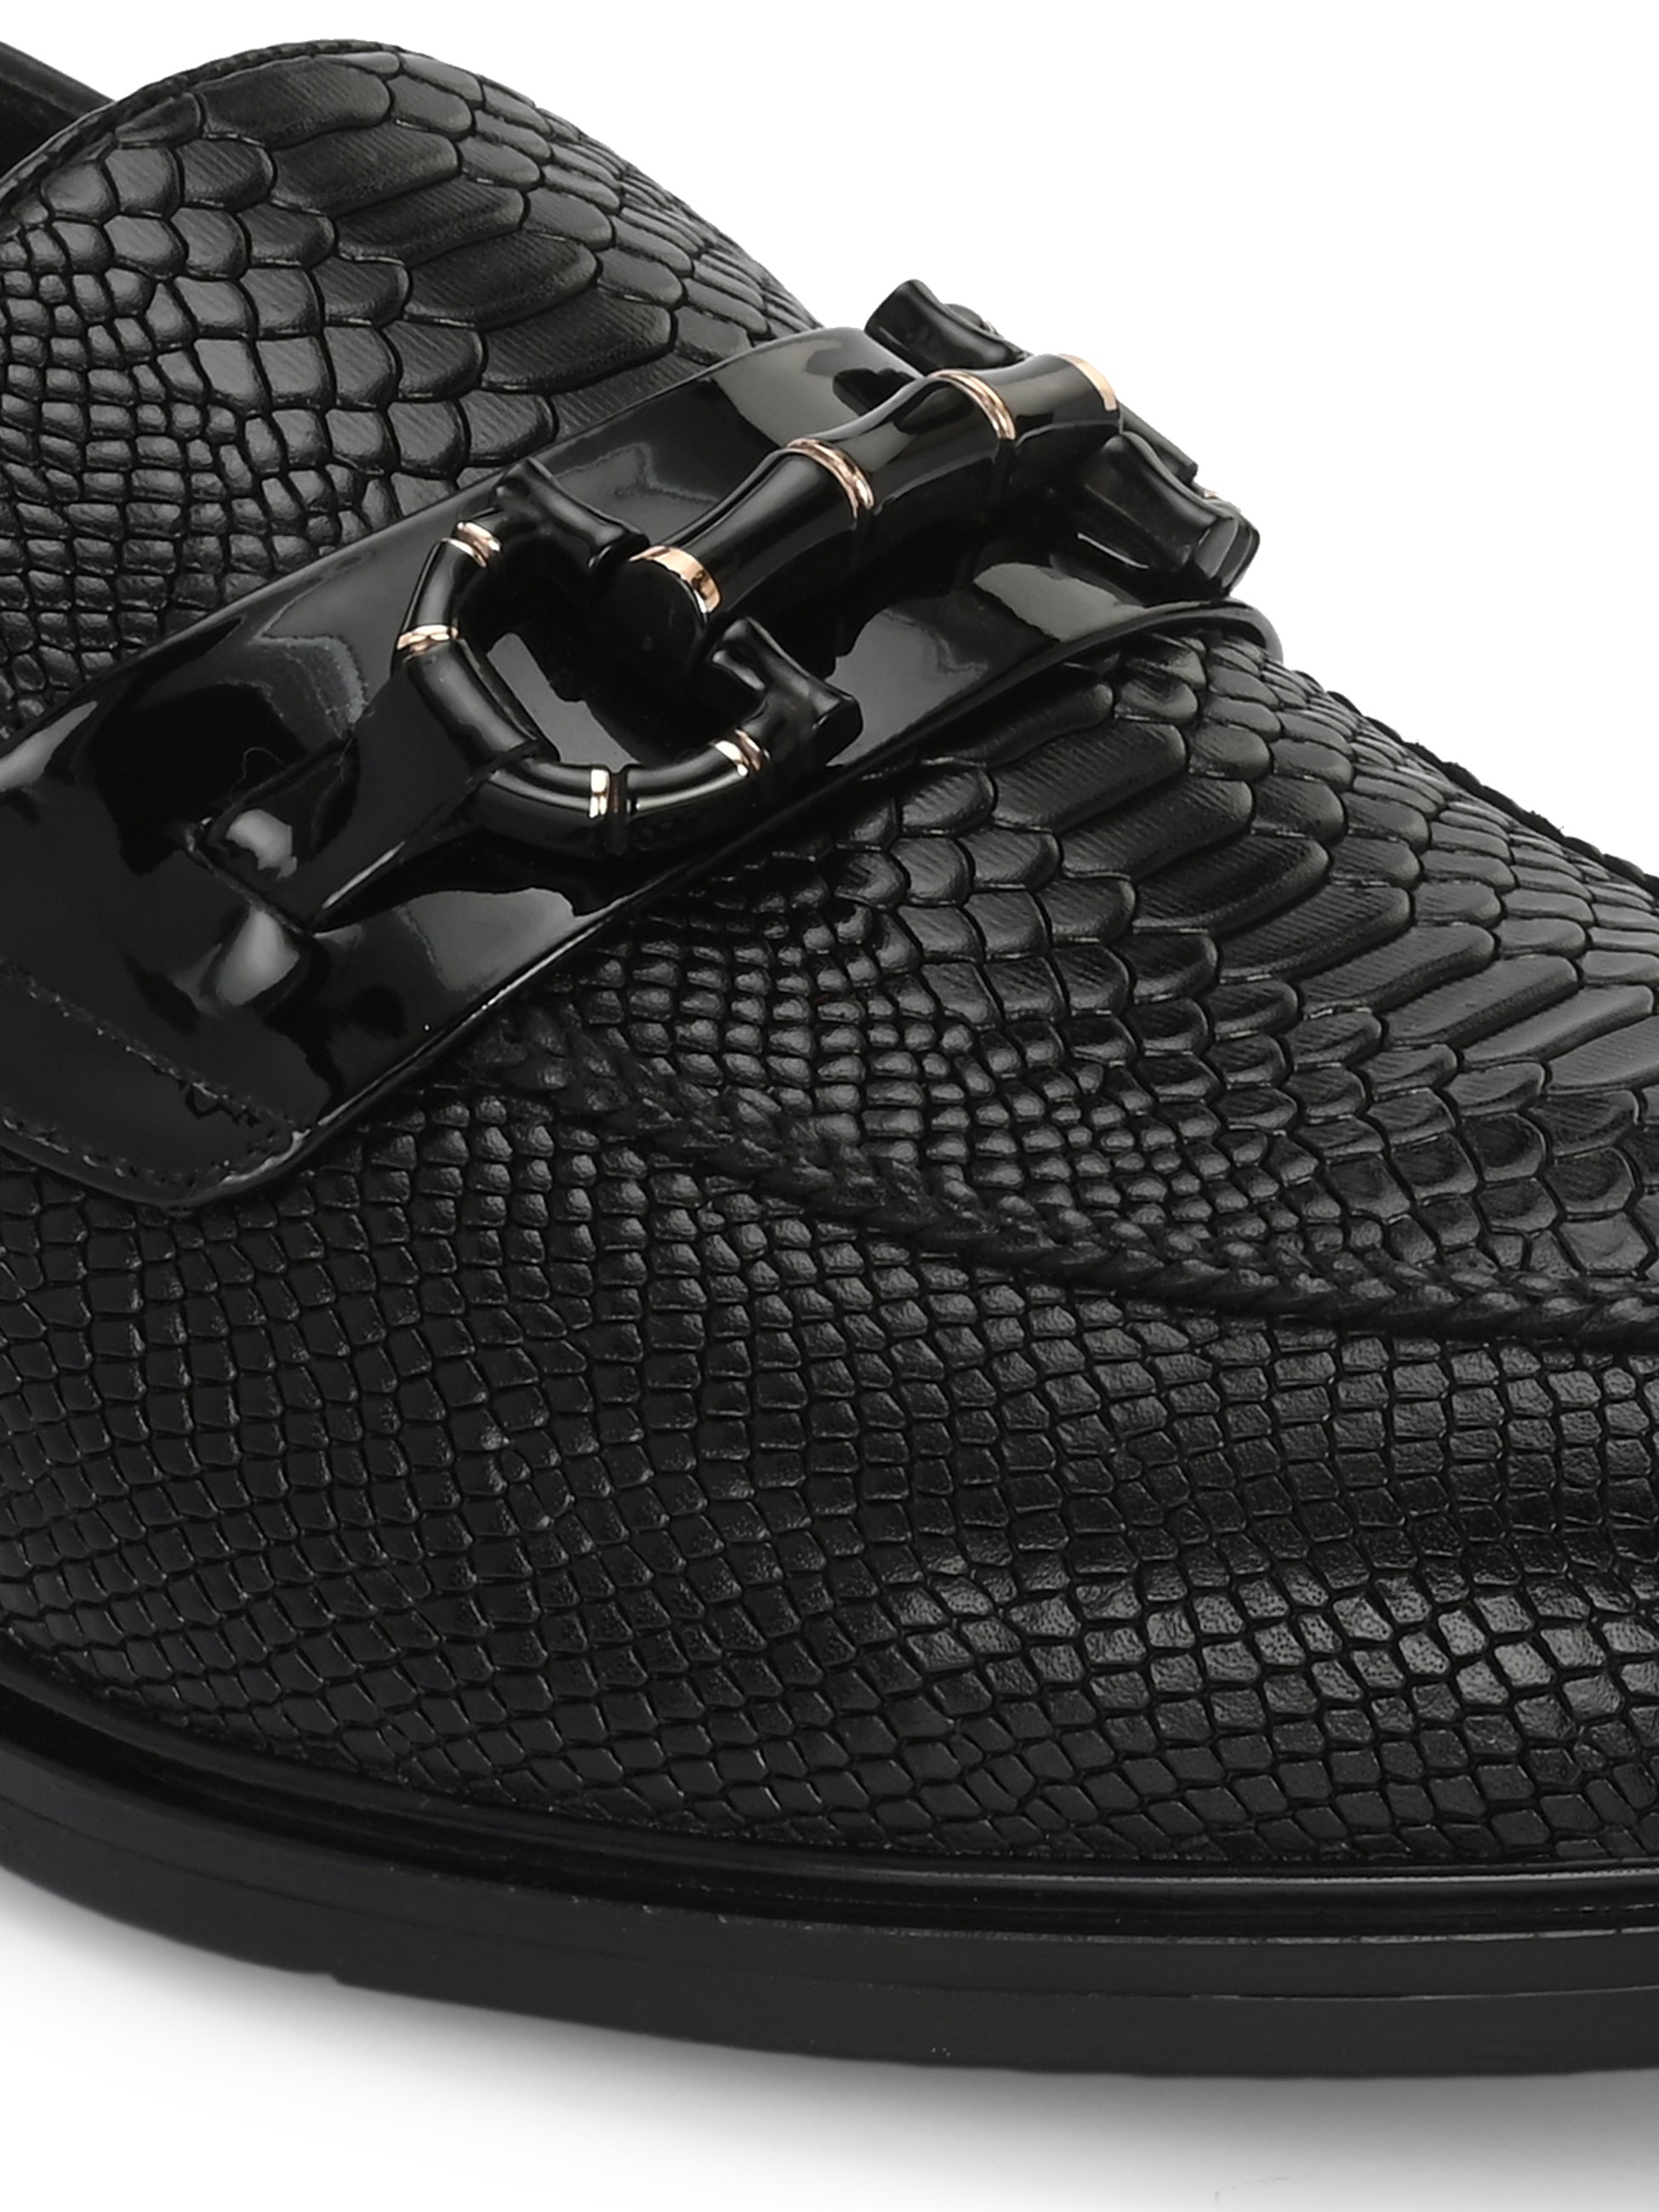 Egoss Platinum - Buckled Shoes For Men